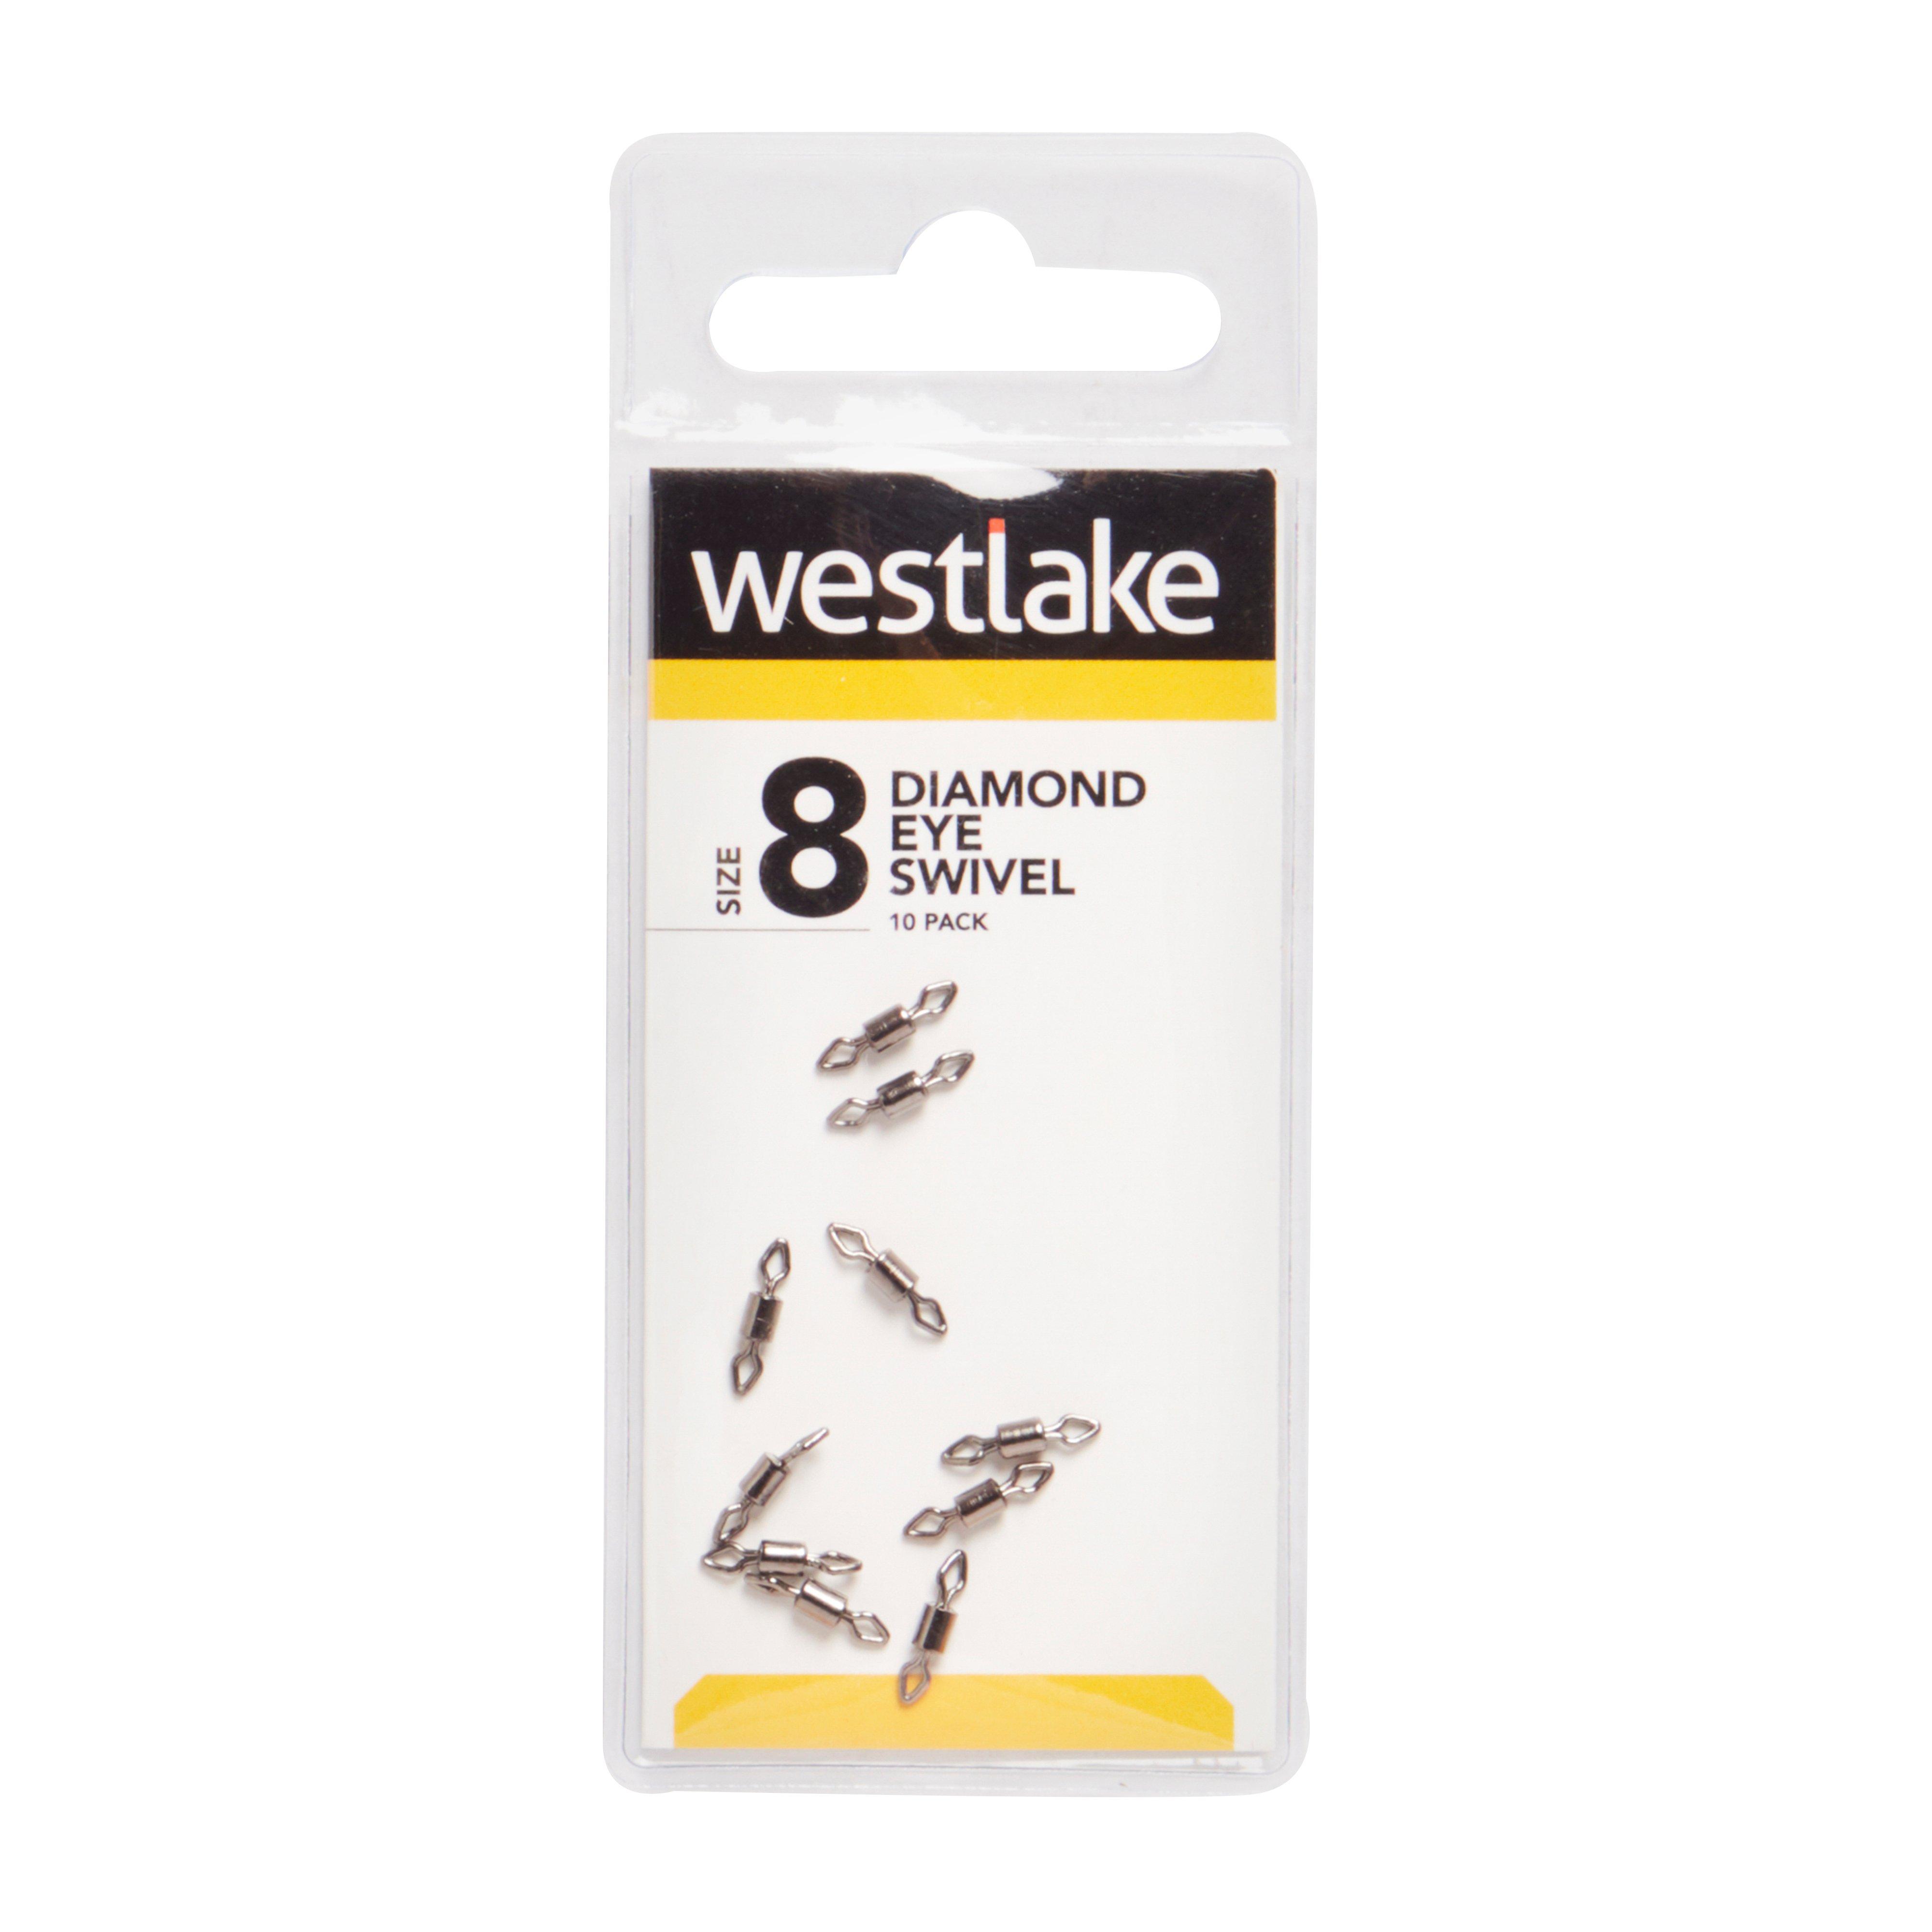 Westlake Diamond Eye Swivel Size 8 14Kg Review